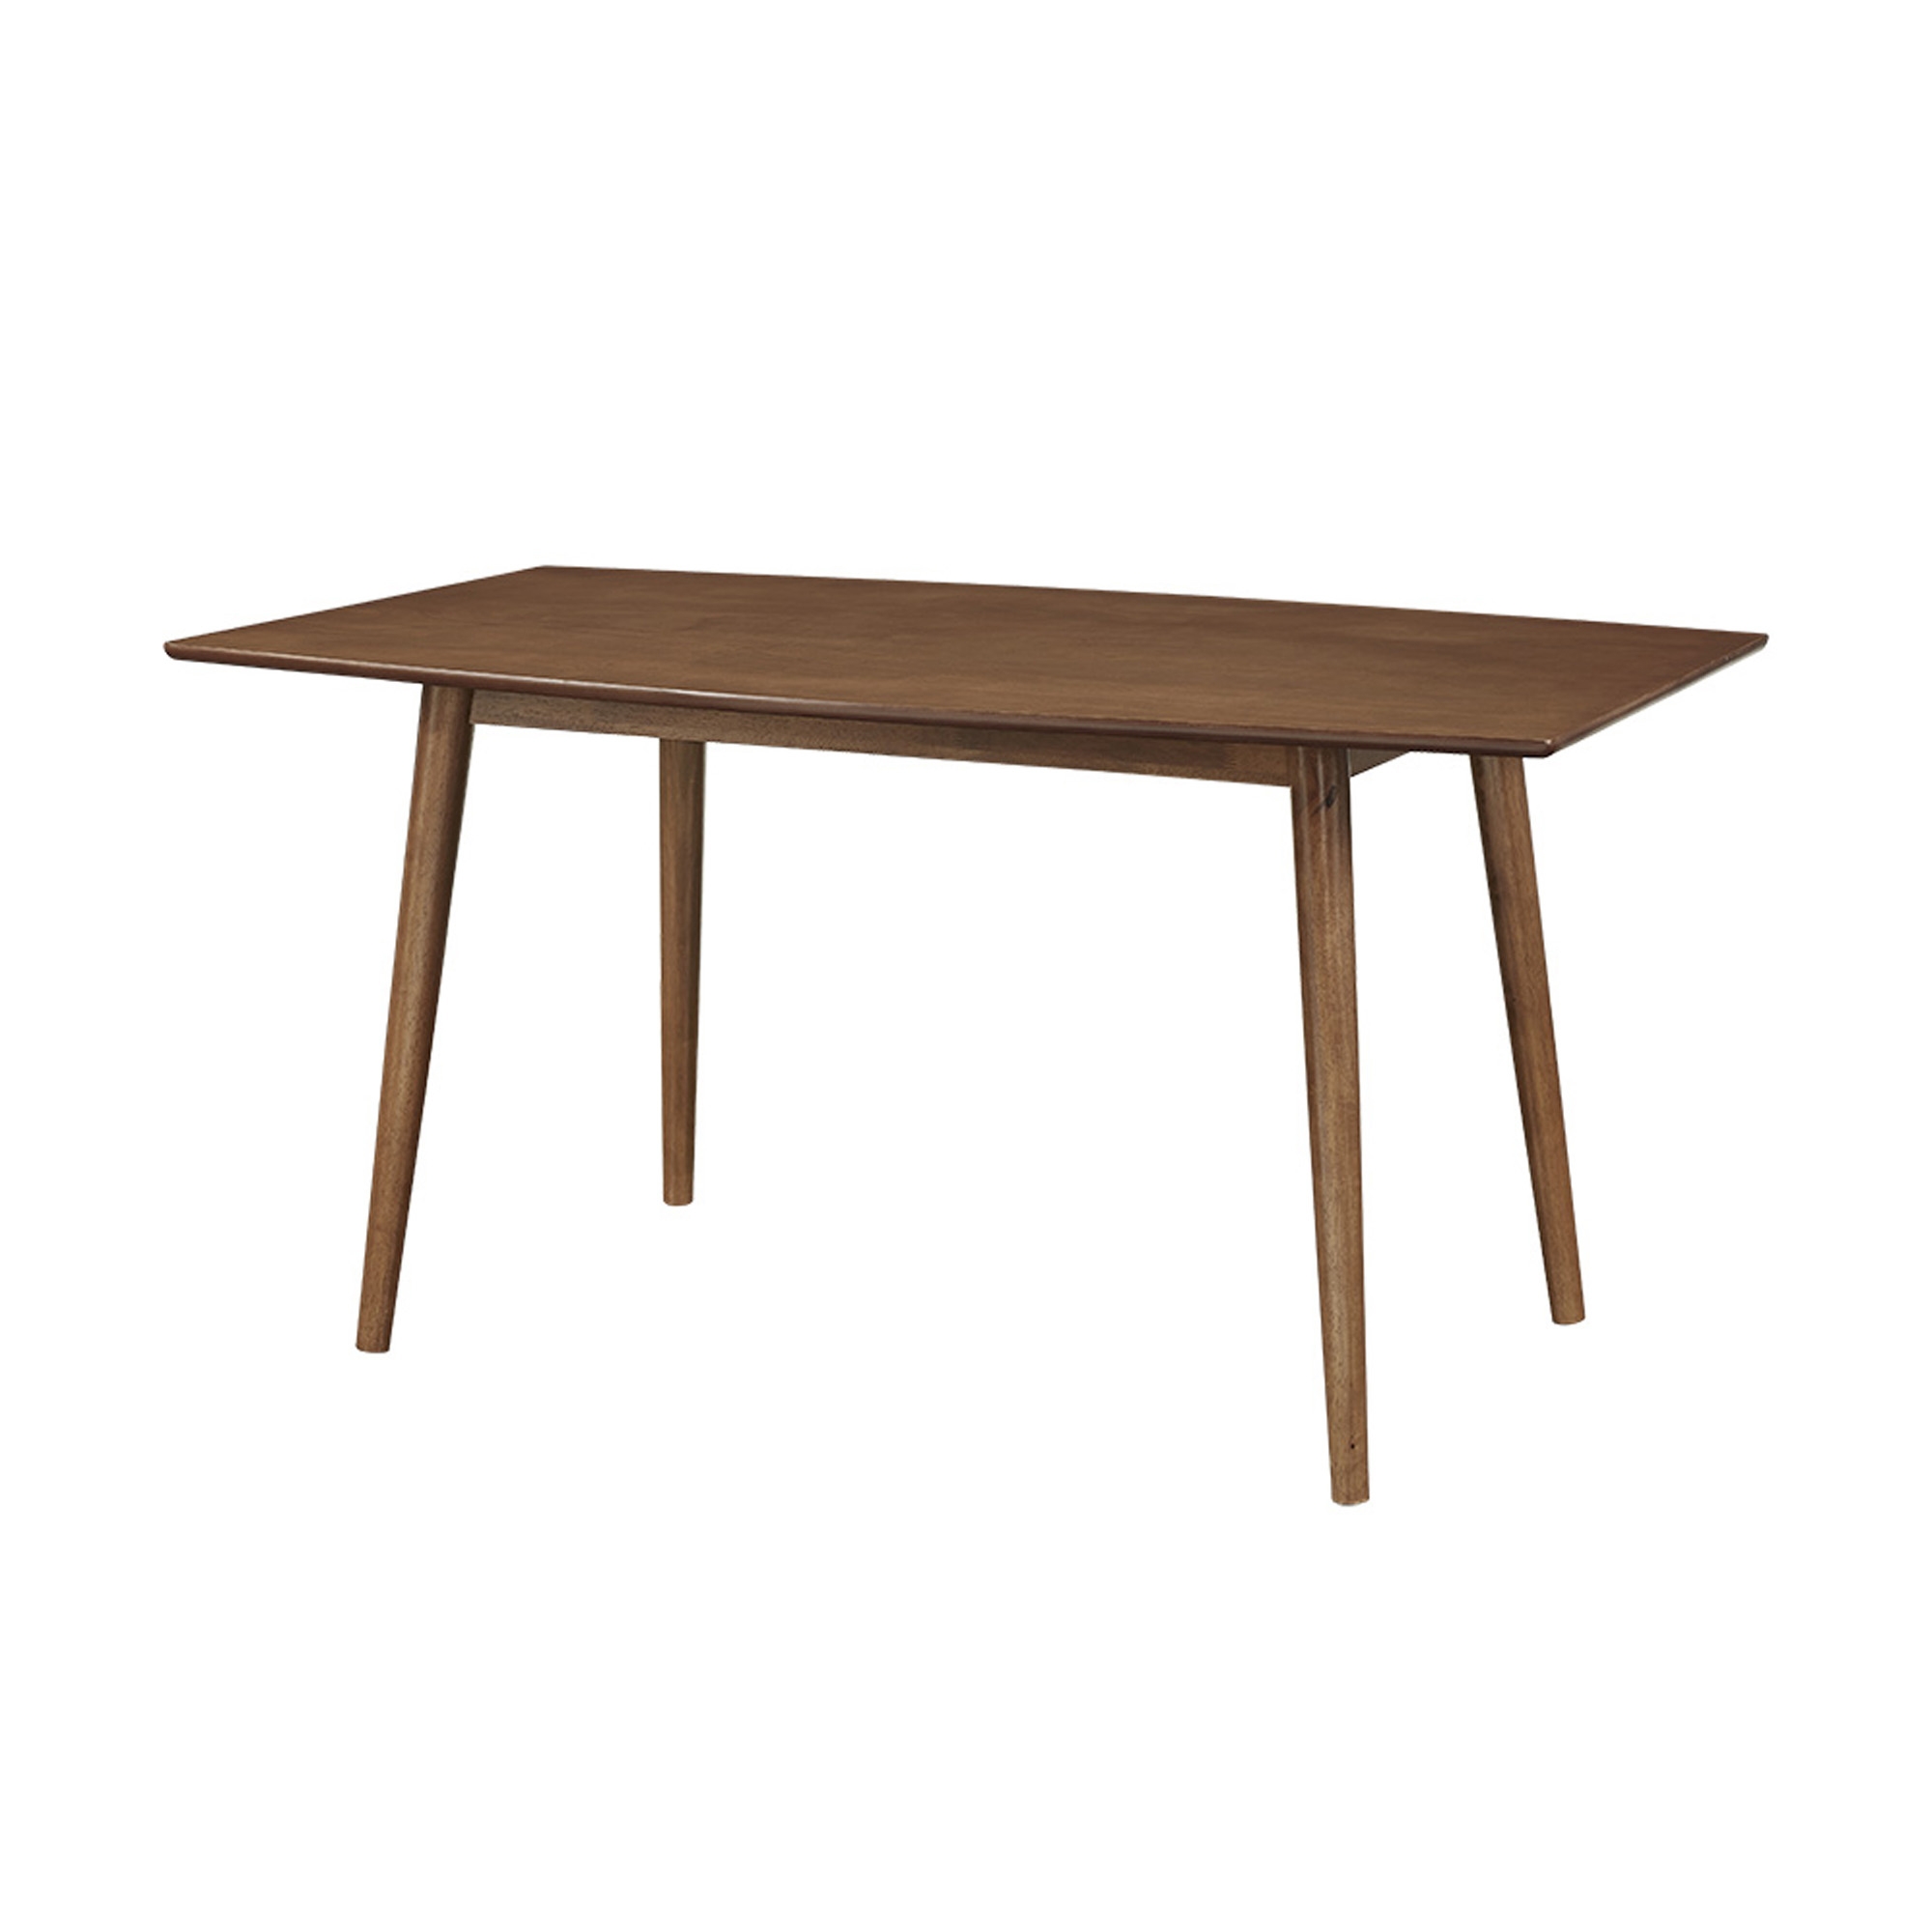 60" Mid Century Wood Dining Table - Acorn - Image 3